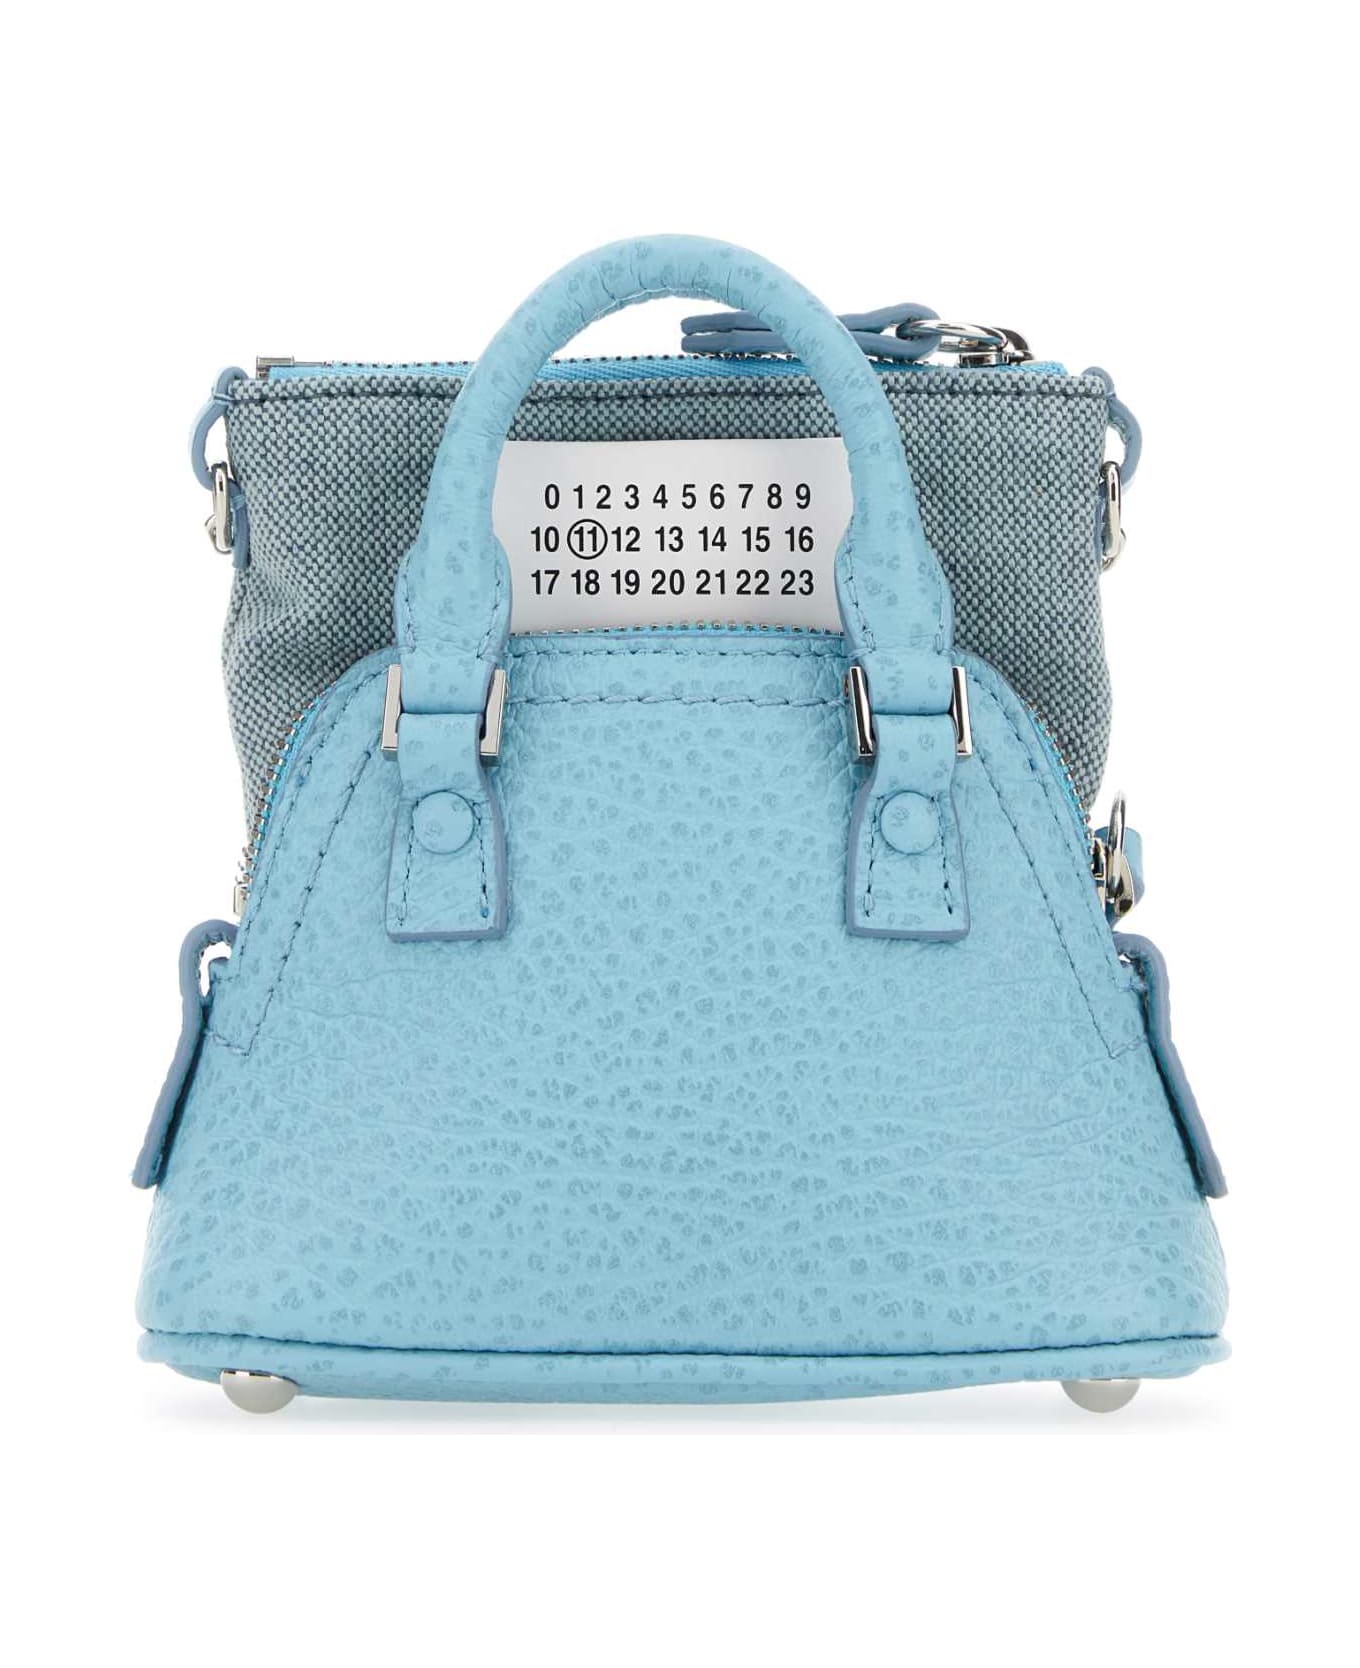 Maison Margiela Light Blue Leather And Fabric 5ac Classique Baby Handbag - AQUA トートバッグ